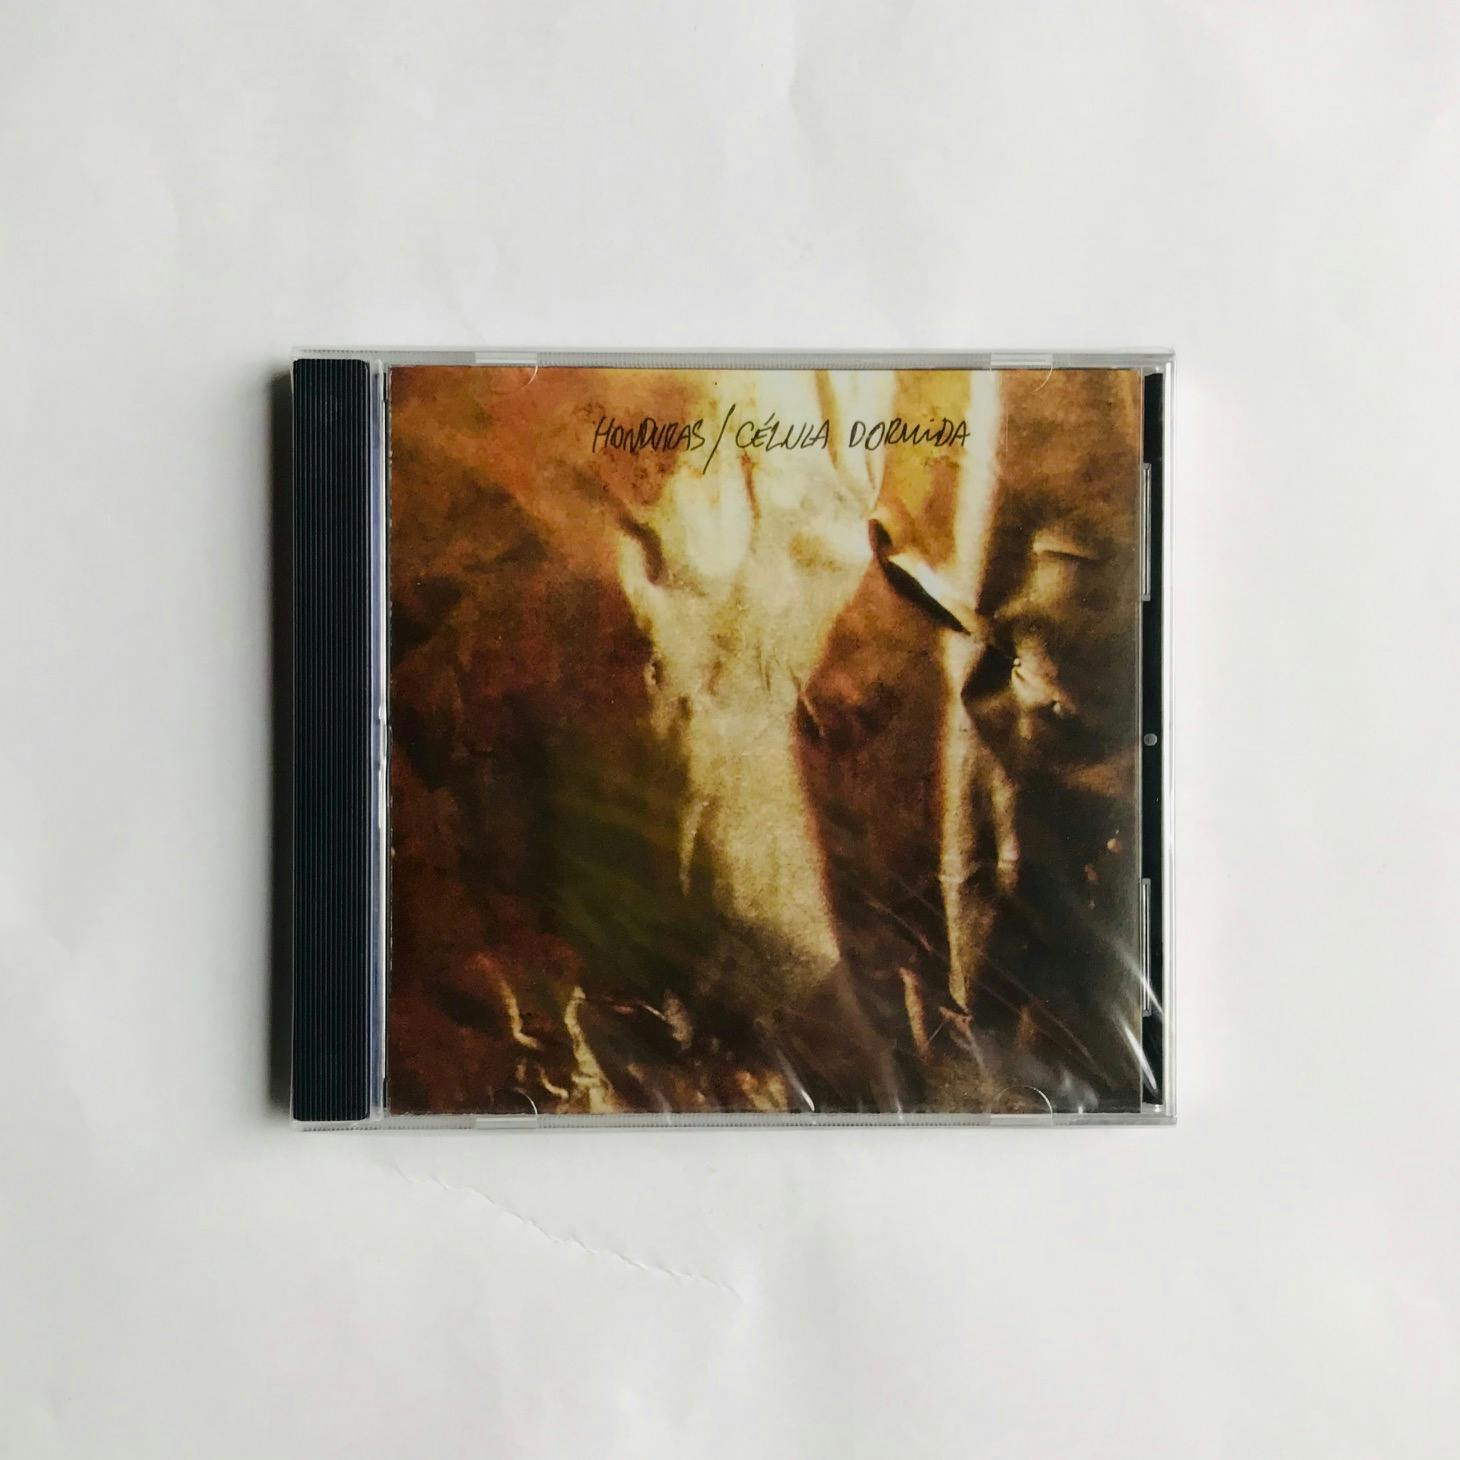 "CÉLULA DORMIDA", CD de Honduras